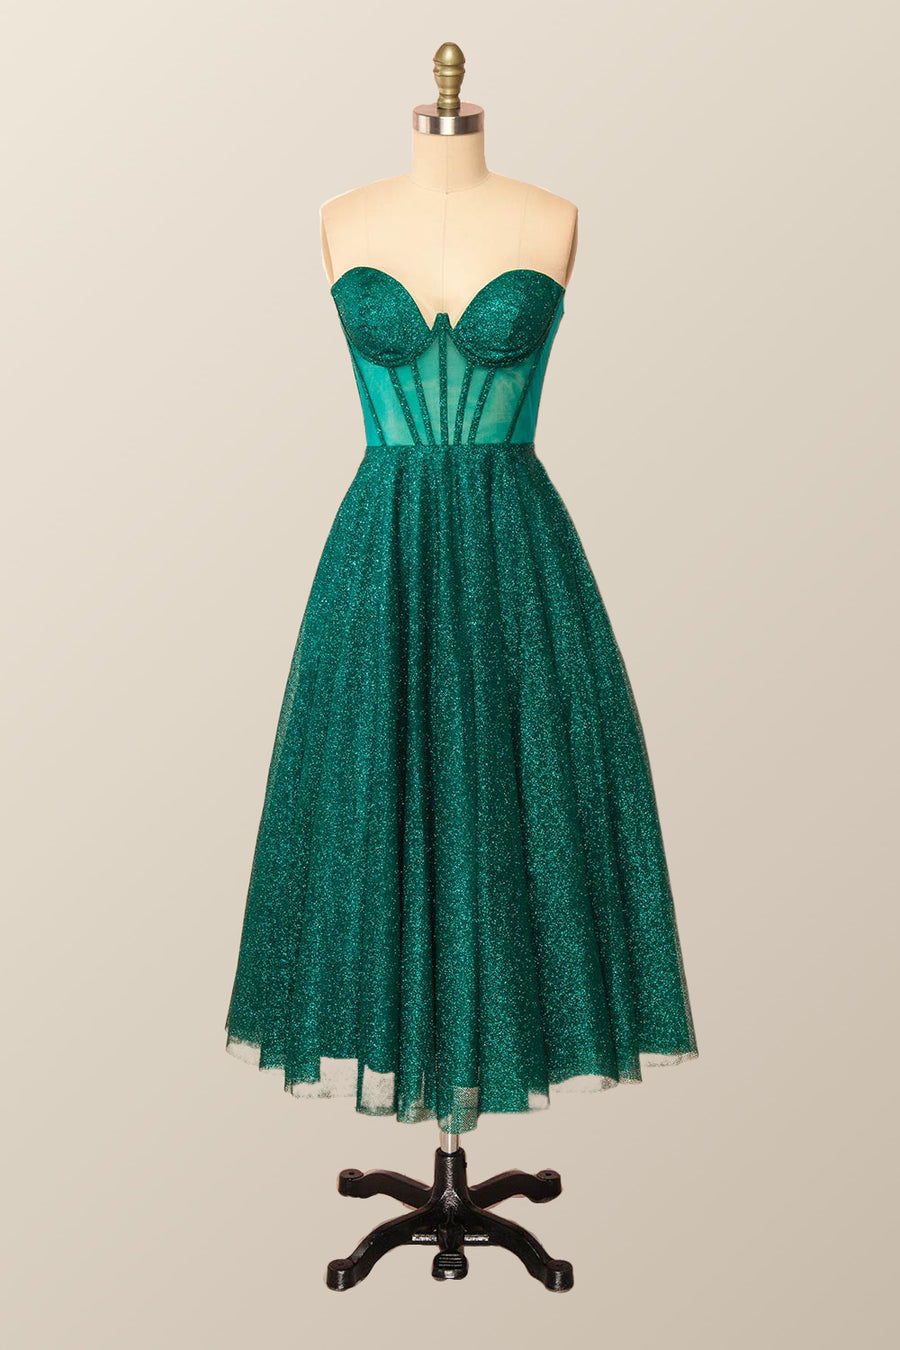 Green Corset A-line Tea Length Dress